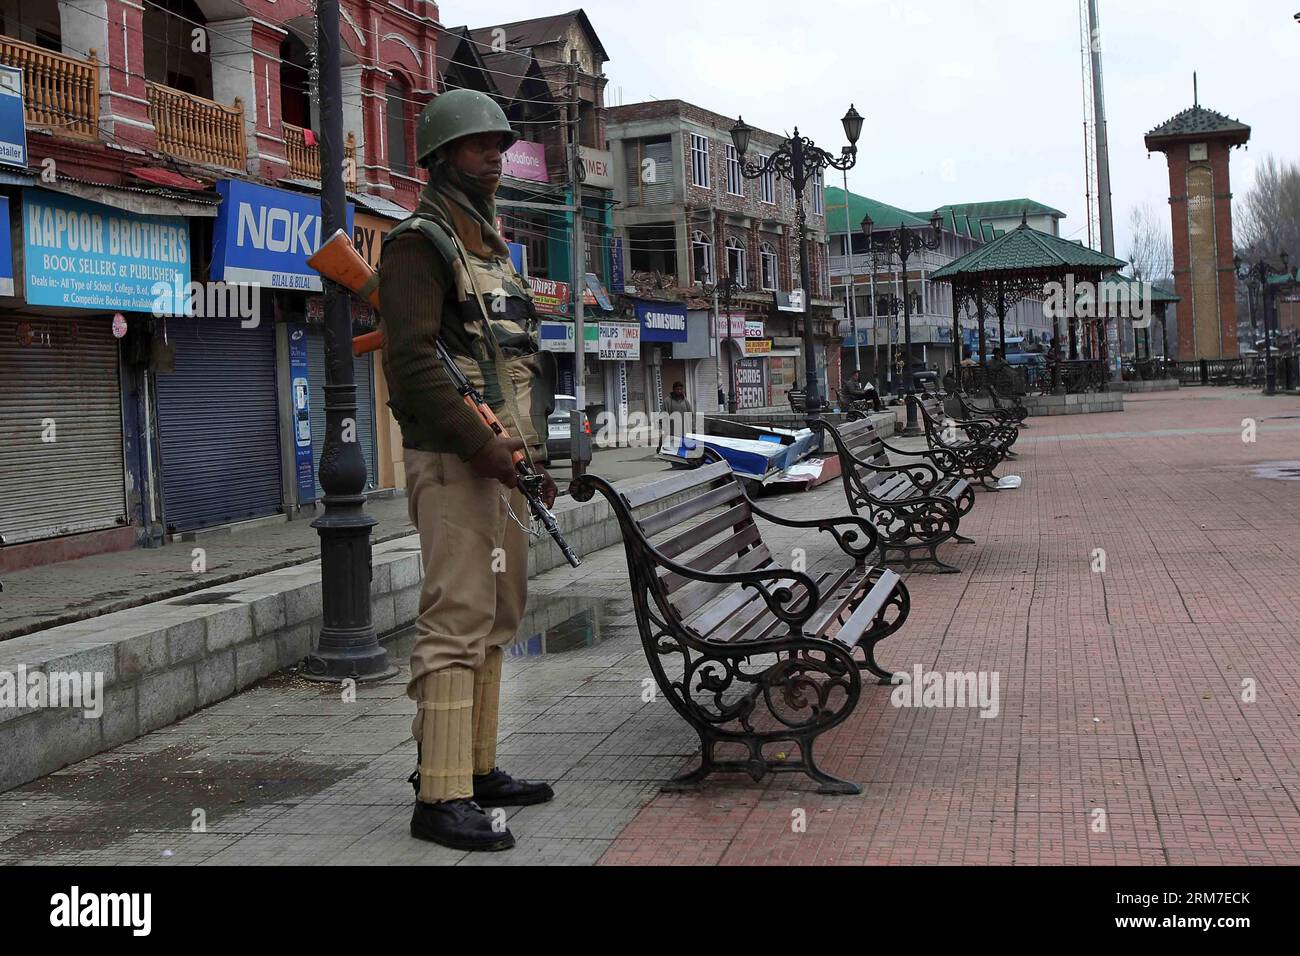 (140228) -- SRINAGAR, 28 febbraio 2014 (Xinhua) -- un'armata paramilitare indiana è in guardia in un mercato chiuso durante lo sciopero a Srinagar, capitale estiva del Kashmir controllato dagli indiani, il 28 febbraio 2014. Un arresto è stato osservato dalle aree a maggioranza musulmana del Kashmir controllato dagli indiani in seguito alla chiamata dei gruppi separatisti del Kashmir che cercavano l'identificazione di sette sospetti militanti uccisi dall'esercito indiano lunedì nel distretto di Kupwara, a circa 125 km a nord-ovest della città di Srinagar. Le proteste scoppiarono nella zona dopo che i civili sostenevano che gli uomini uccisi fossero civili. La polizia non ha la sua identita' Foto Stock